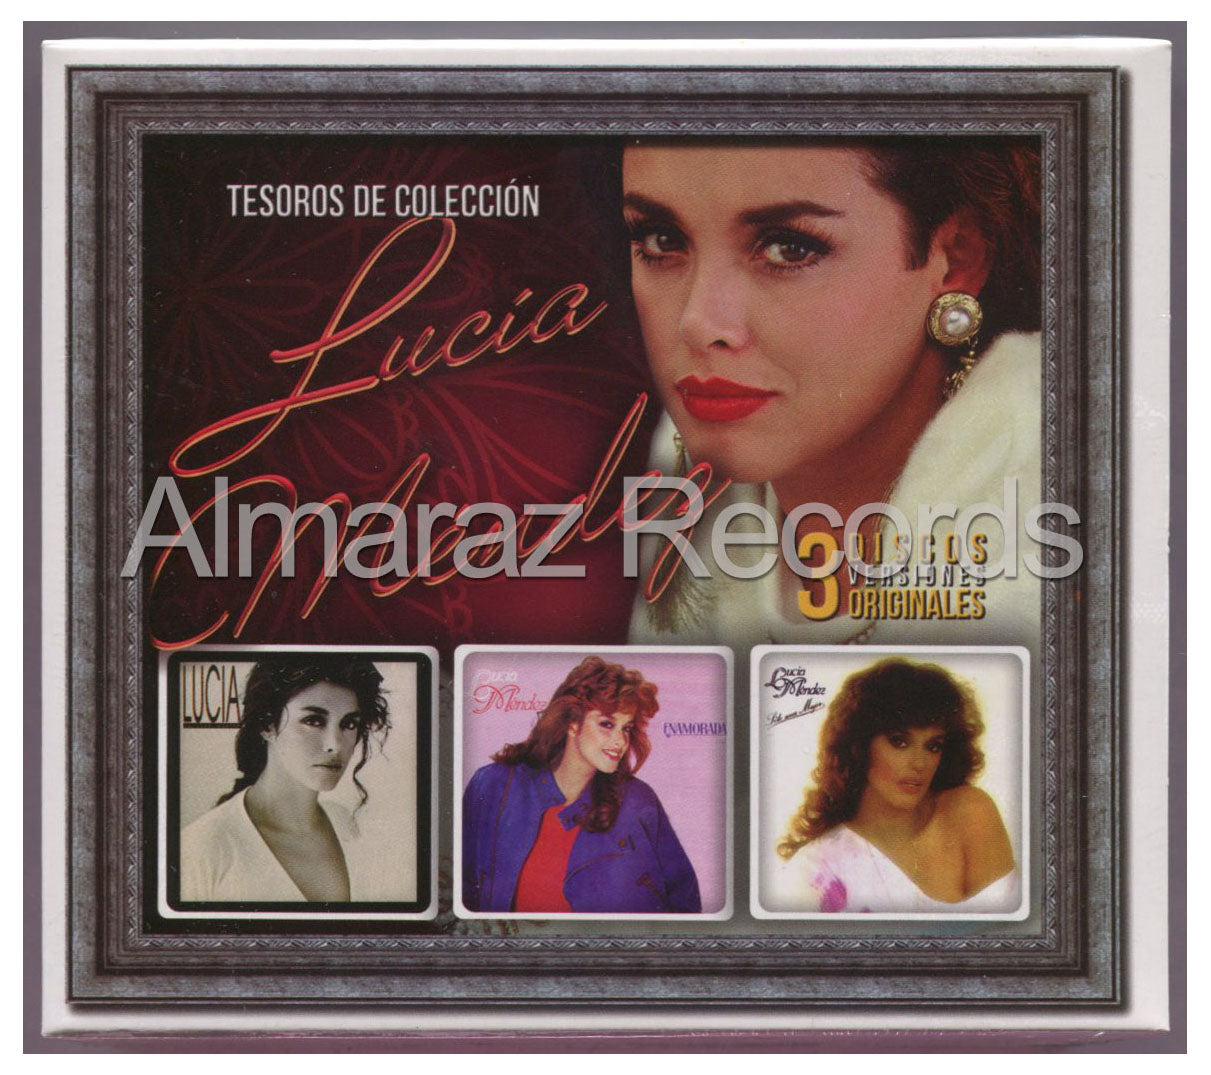 Lucia Mendez Tesoros De Coleccion 3CD